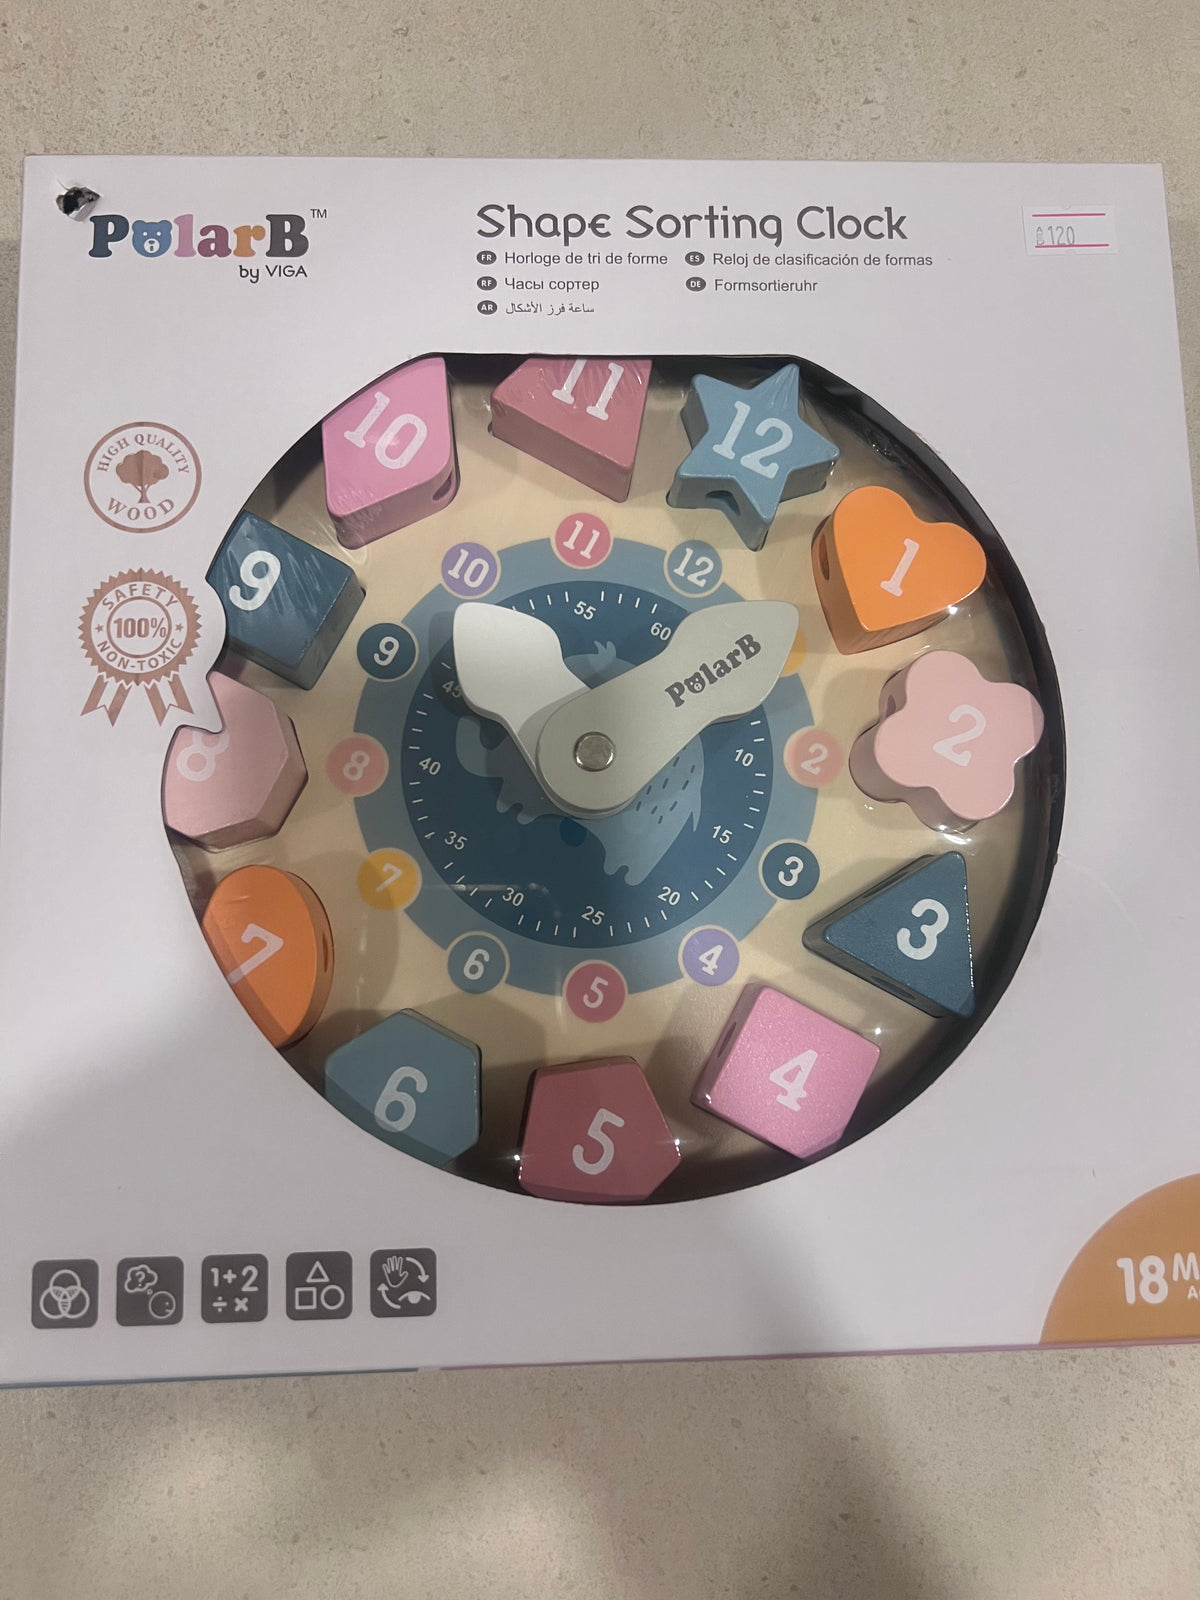 Polar b shape sorting clock